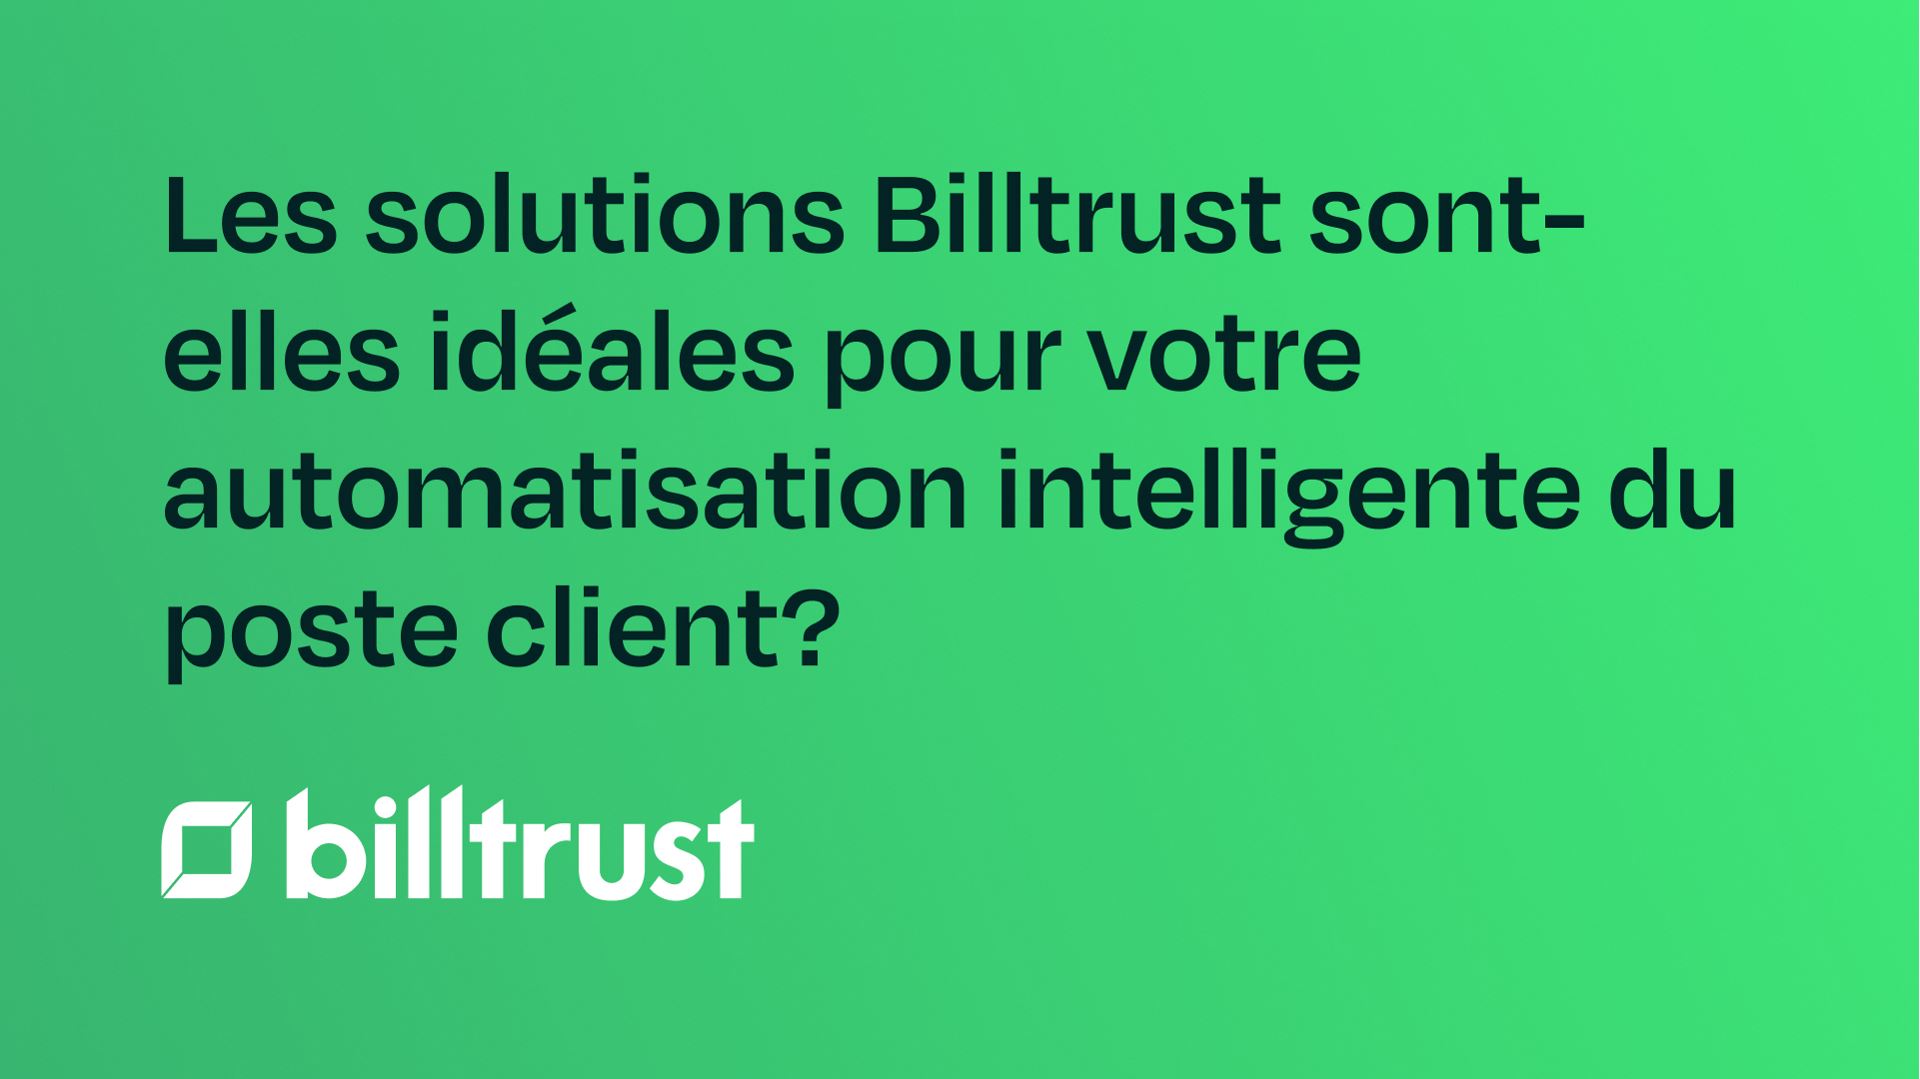 Les solutions Billtrust sont-elles idéales pour votre automatisation intelligente du poste client?